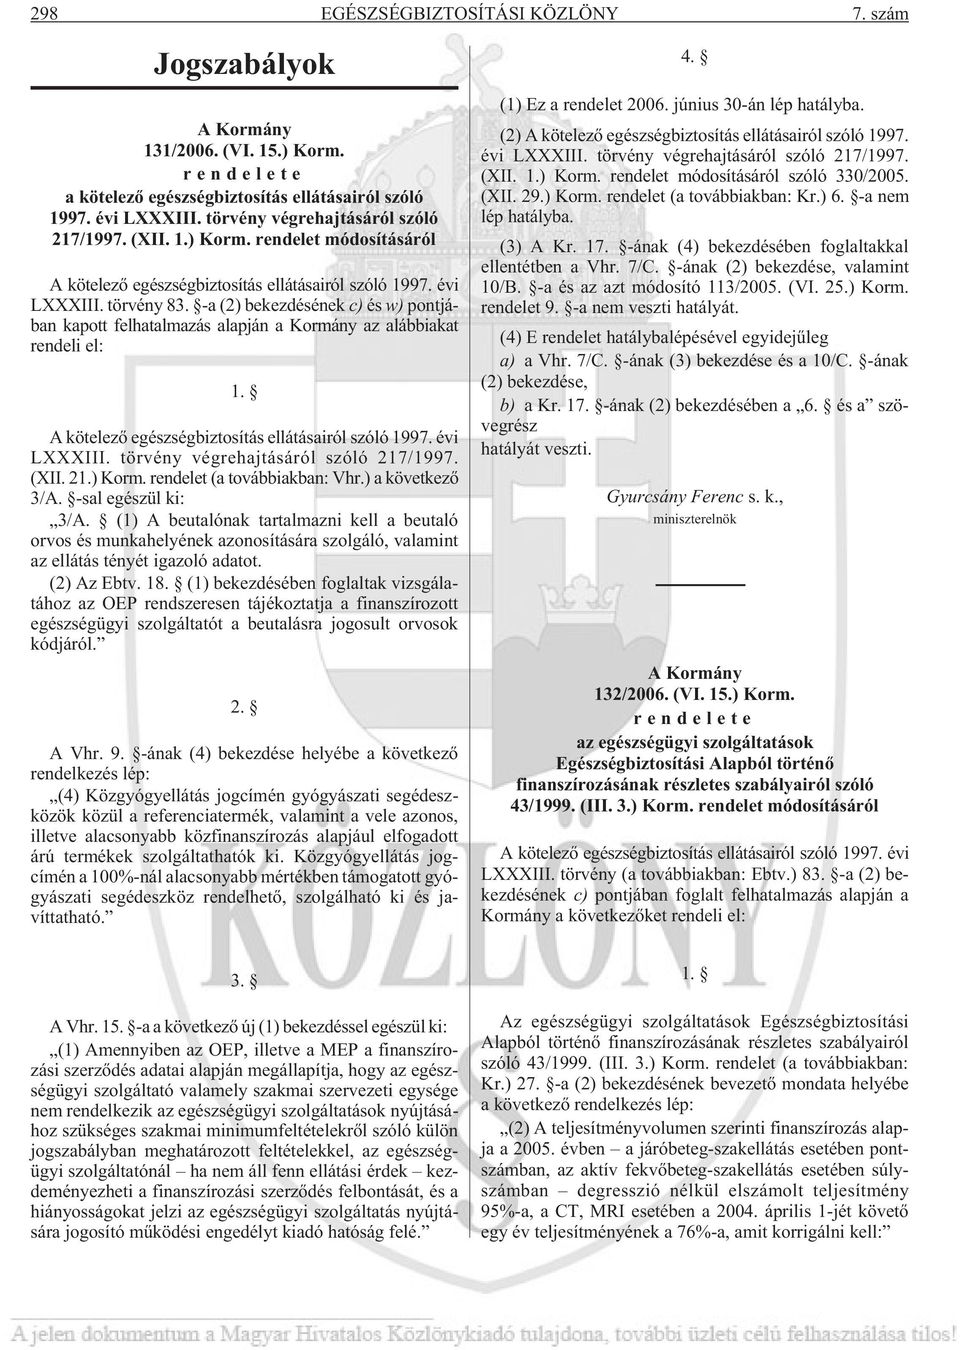 -a (2) bekezdésének c) és w) pontjában kapott felhatalmazás alapján a Kormány az alábbiakat rendeli el: 1. A kötelezõ egészségbiztosítás ellátásairól szóló 1997. évi LXXXIII.